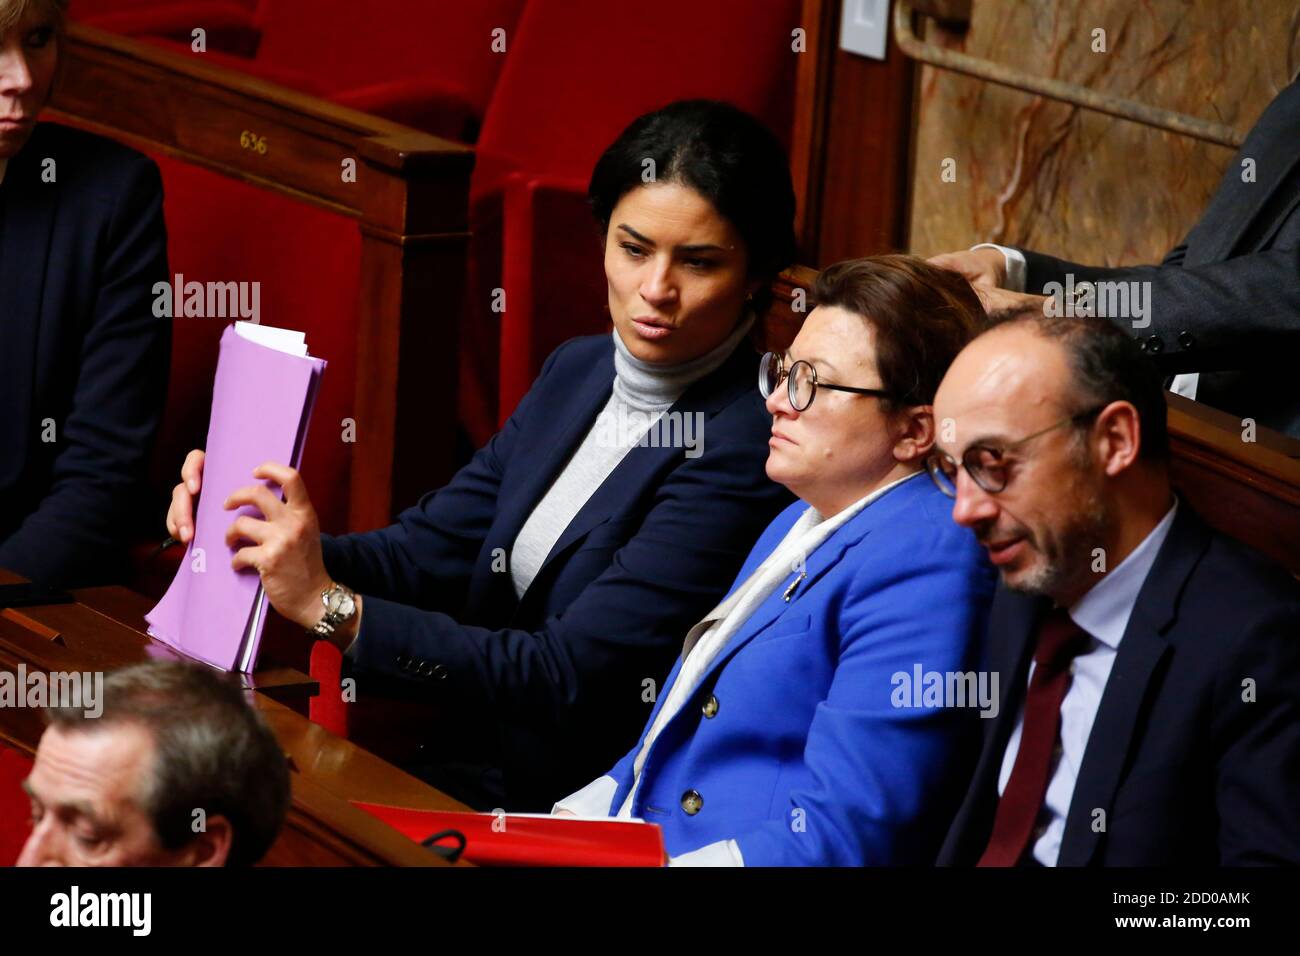 Sonia Krimi durante el turno de preguntas en el Palacio Bourbon, la Asamblea Nacional Francesa en París, Francia el 20 de marzo de 2018. Foto de Stephane le Tellec/ABACAPRESS.COM Foto de stock